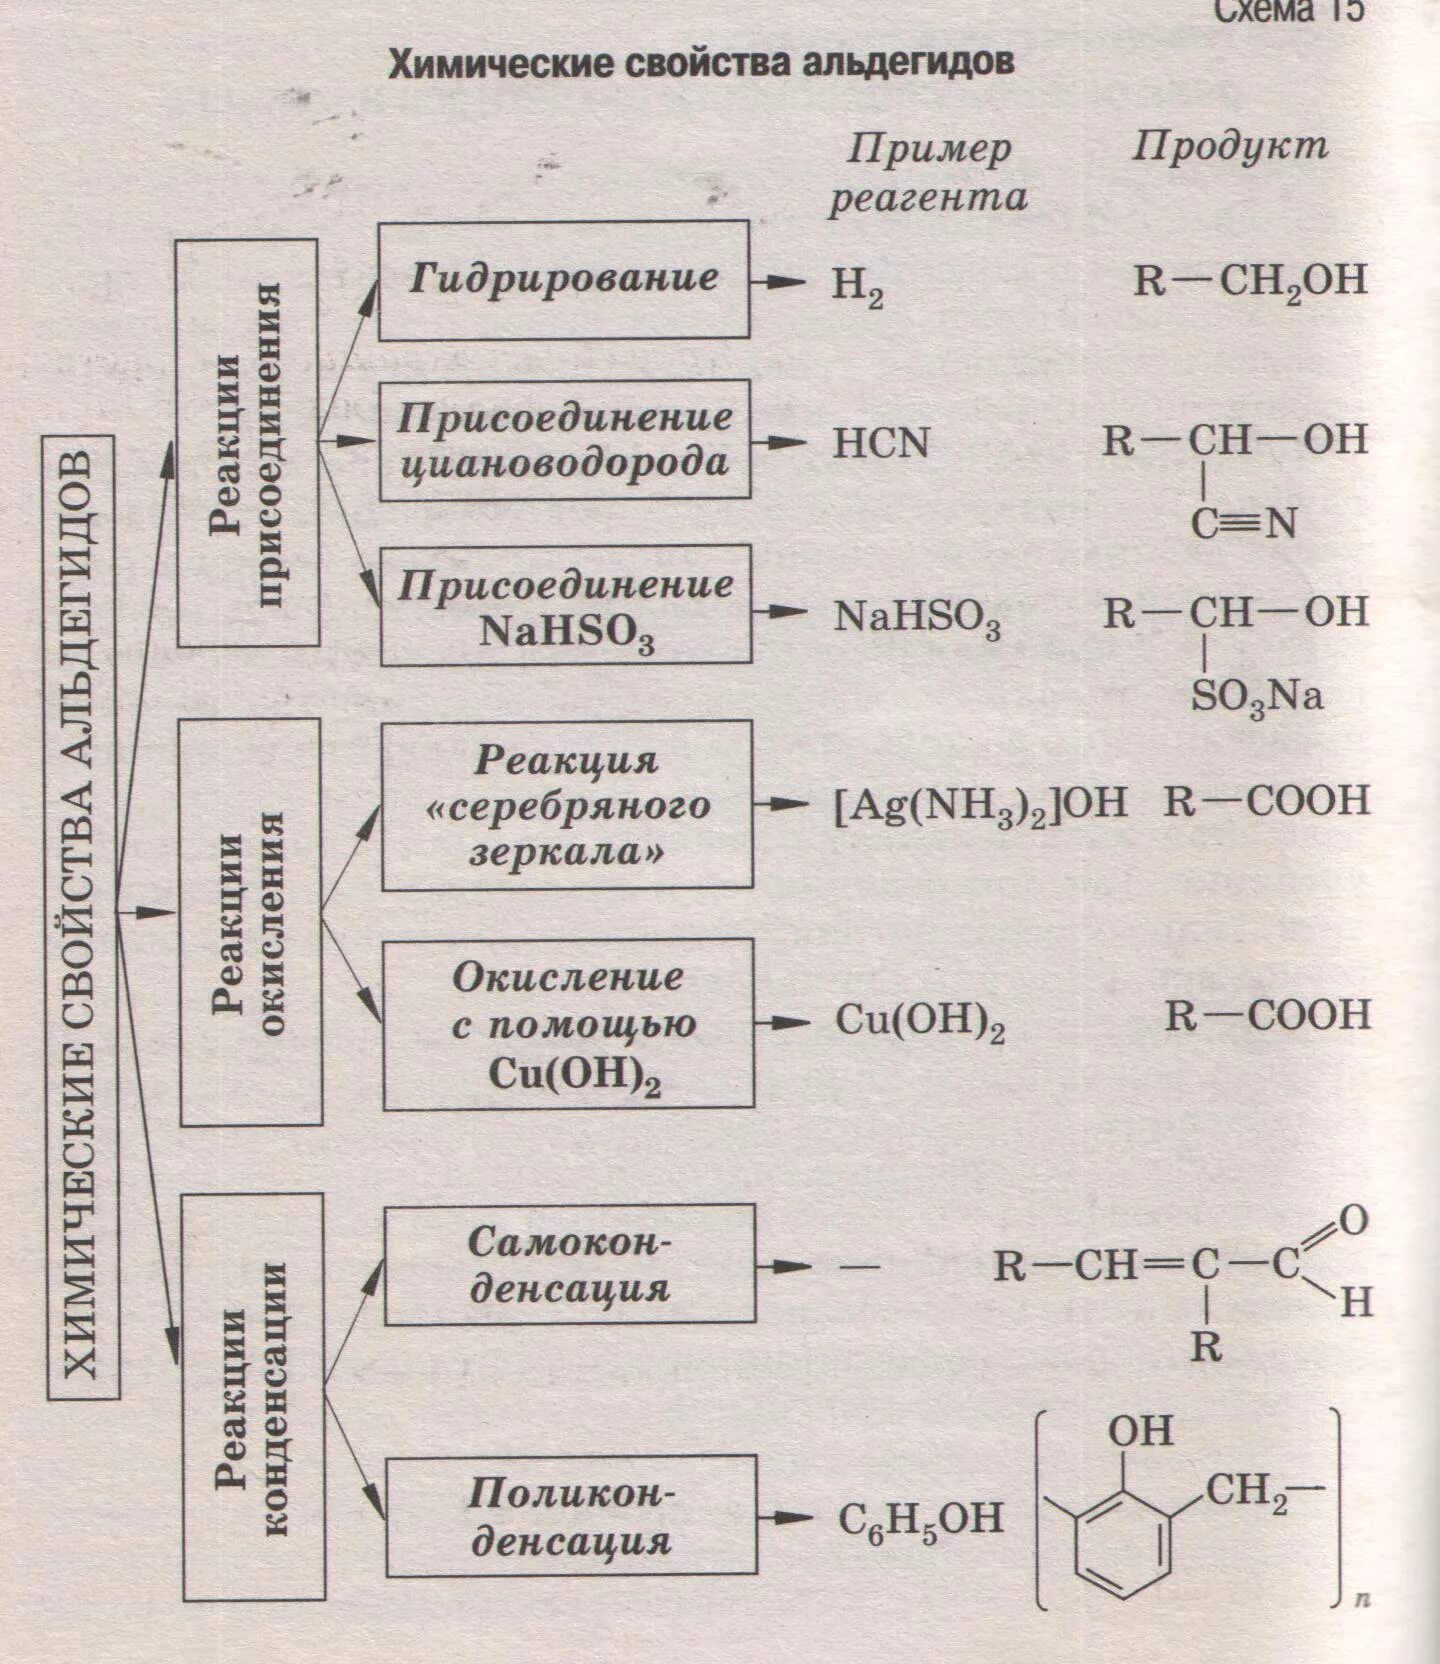 Химические свойства альдегидов 10 класс химия. Химические свойства альдегидов и кетонов таблица. Альдегиды и кетоны химические свойства 10 класс. Химические свойства альдегидов 10 класс.